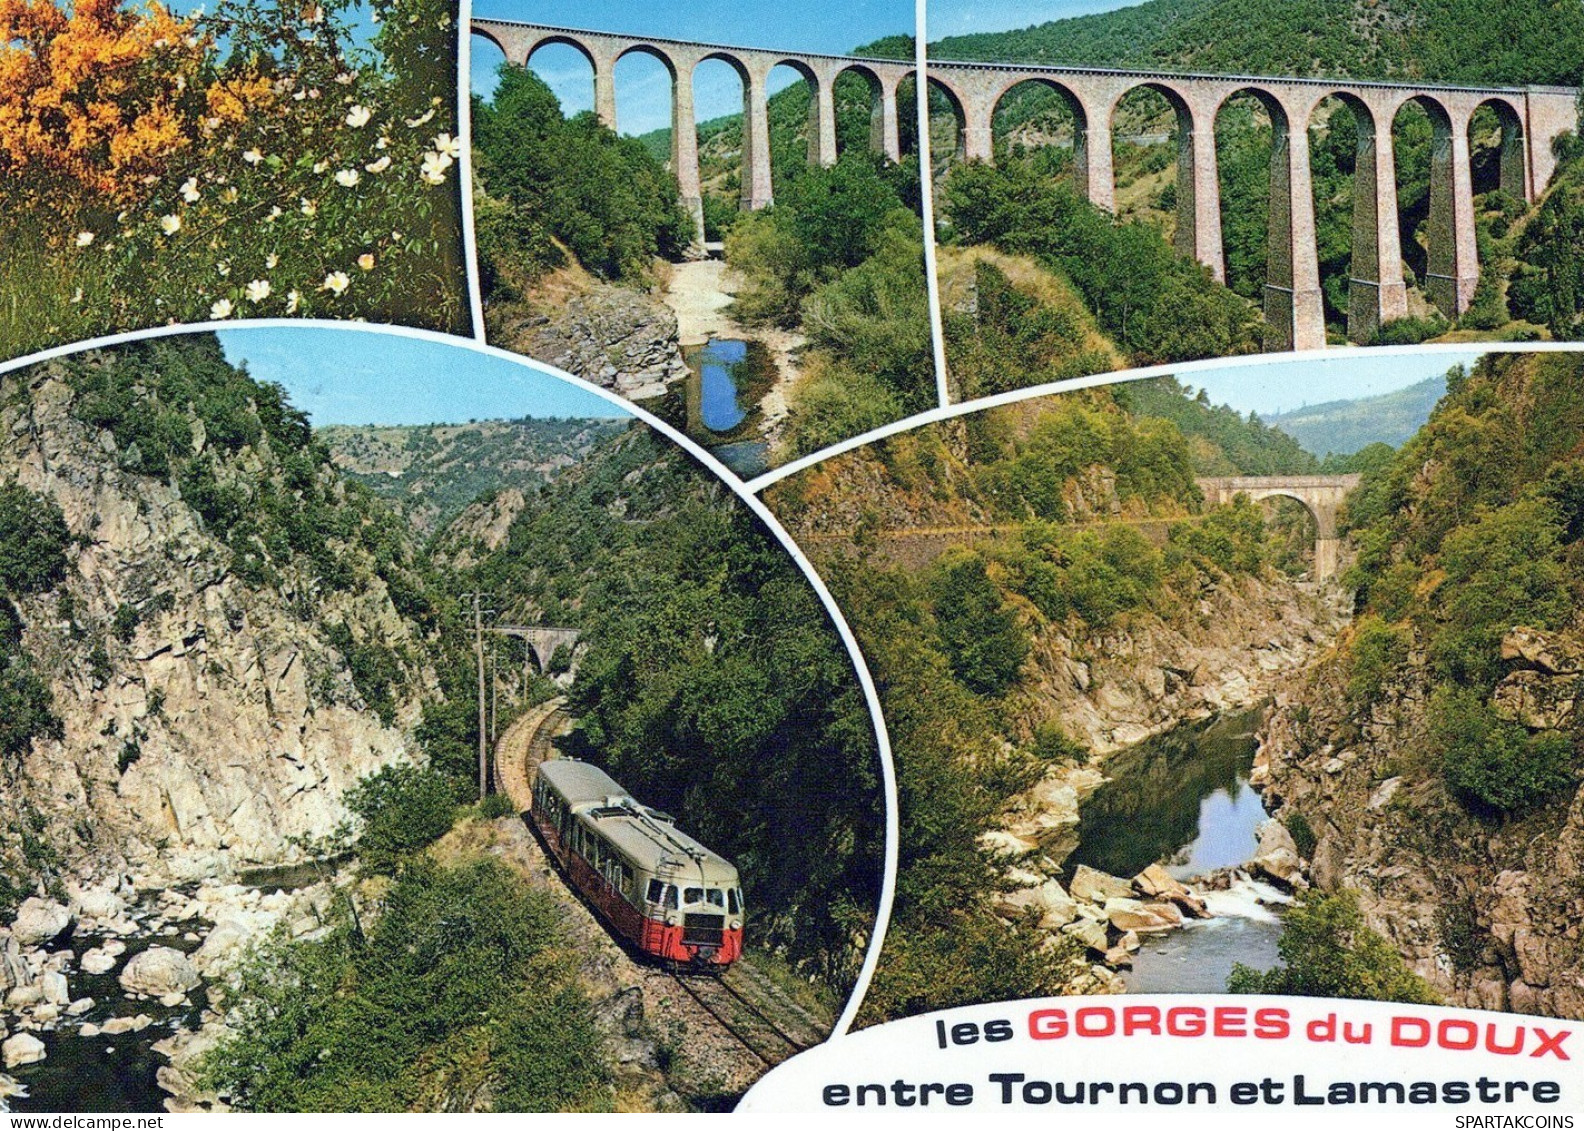 ZUG Schienenverkehr Eisenbahnen Vintage Ansichtskarte Postkarte CPSM #PAA903.DE - Trains